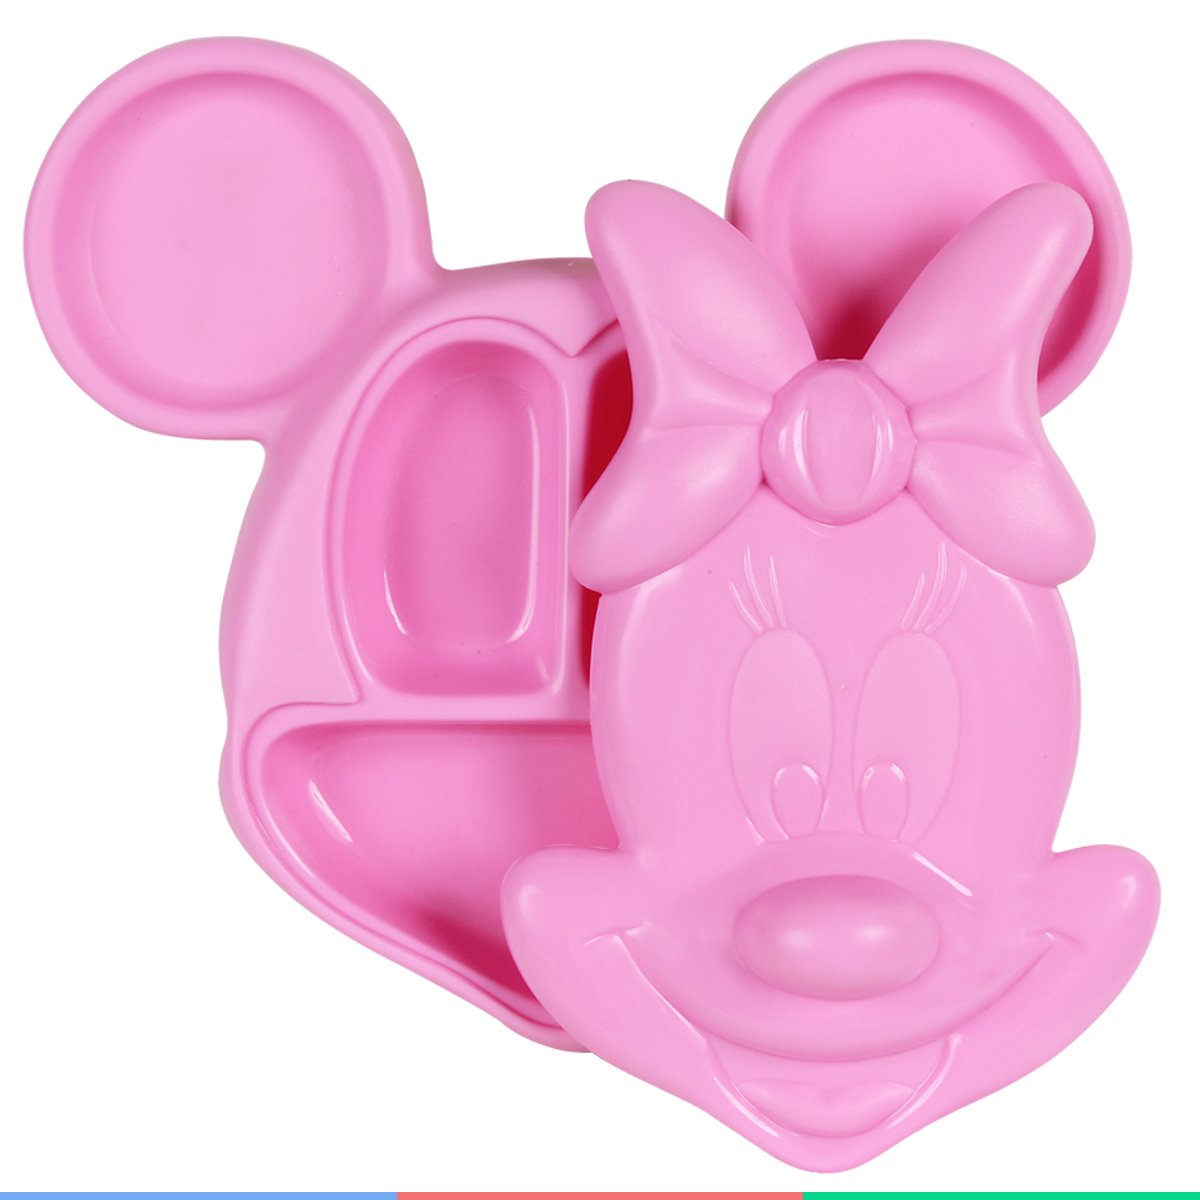 Prato Infantil Alimentação do Bebê com Tampa e Divisórias Formato Minnie Mouse 3d Rosa Disney - 6